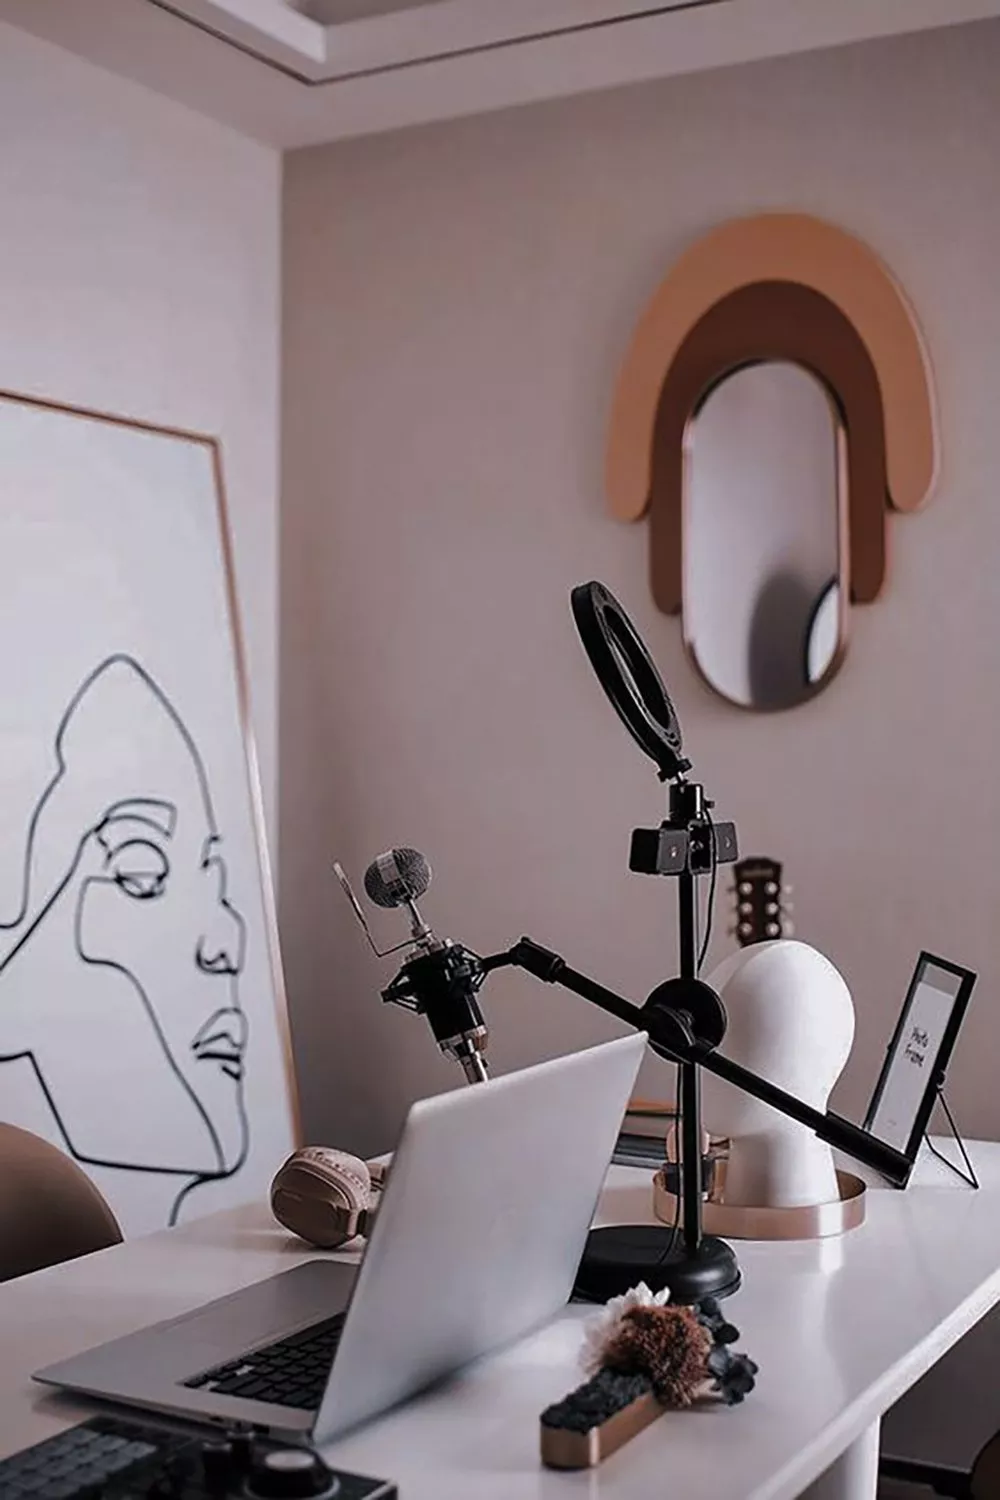 تأثير تيك توك في إعادة رسم المشهد الموسيقي العربي